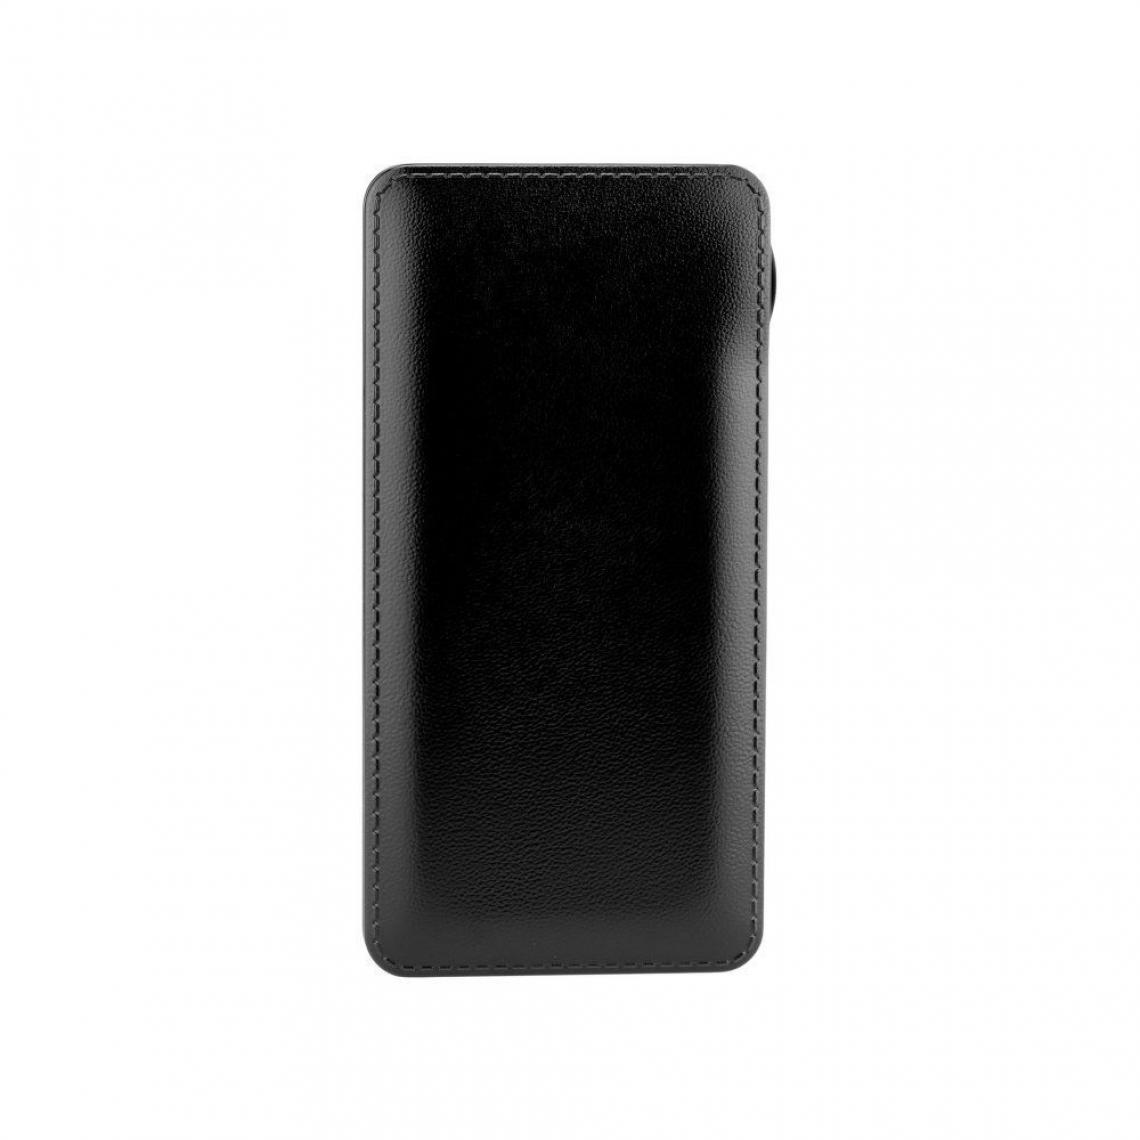 Ozzzo - Chargeur batterie externe 30000 mAh powerbank ozzzo noir pour HTC U11 - Autres accessoires smartphone